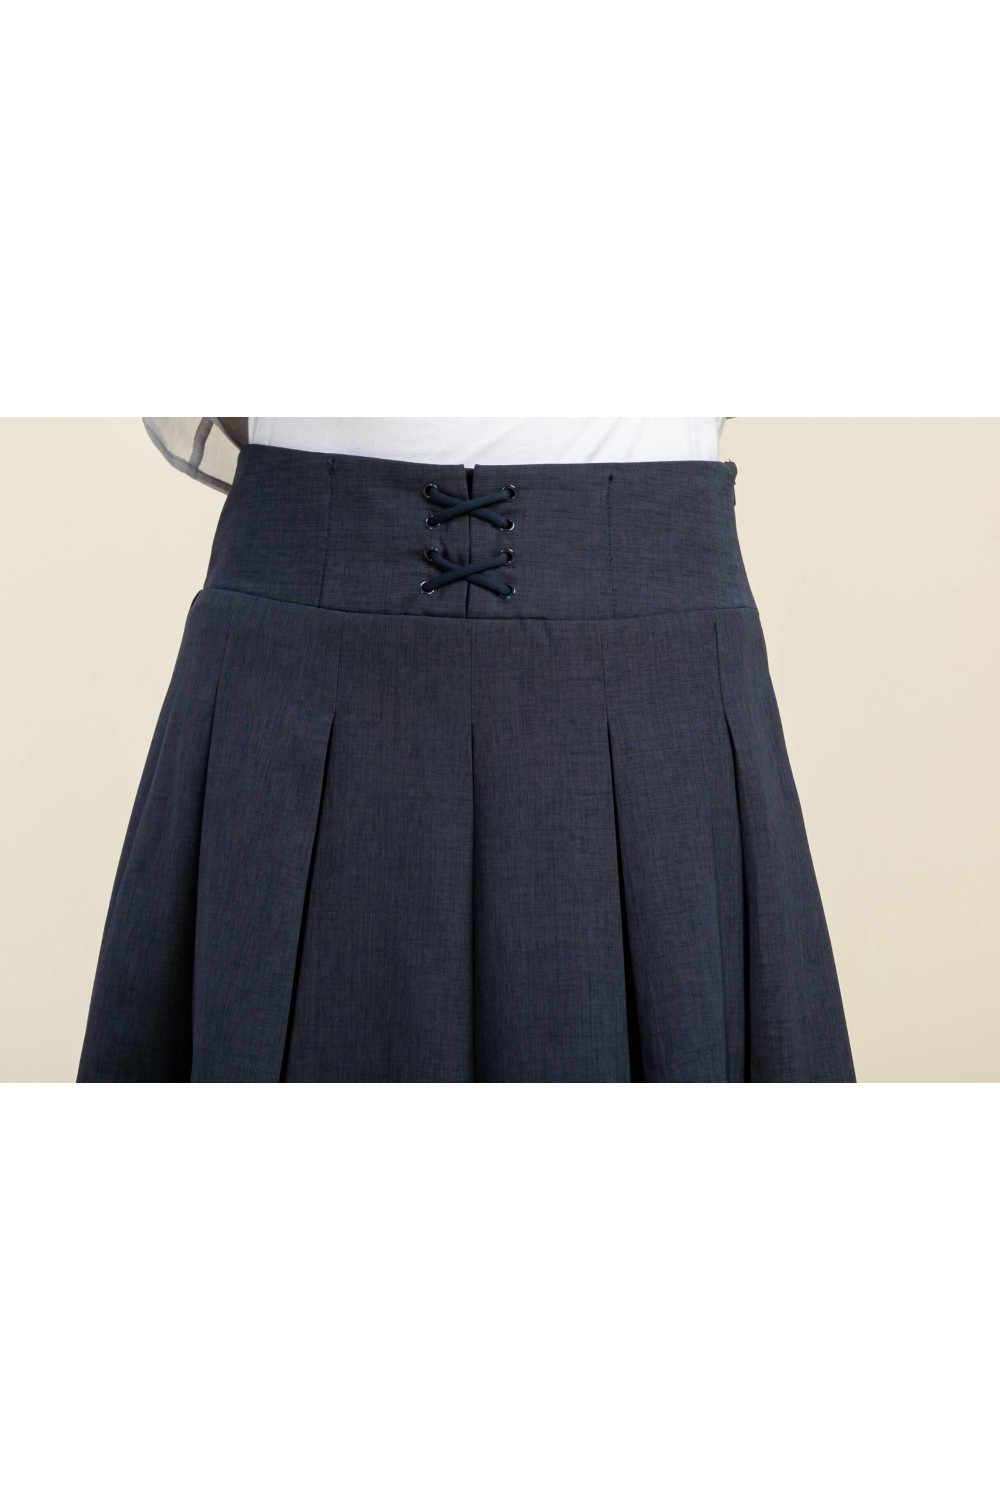 A-Line High-Waisted Skirt